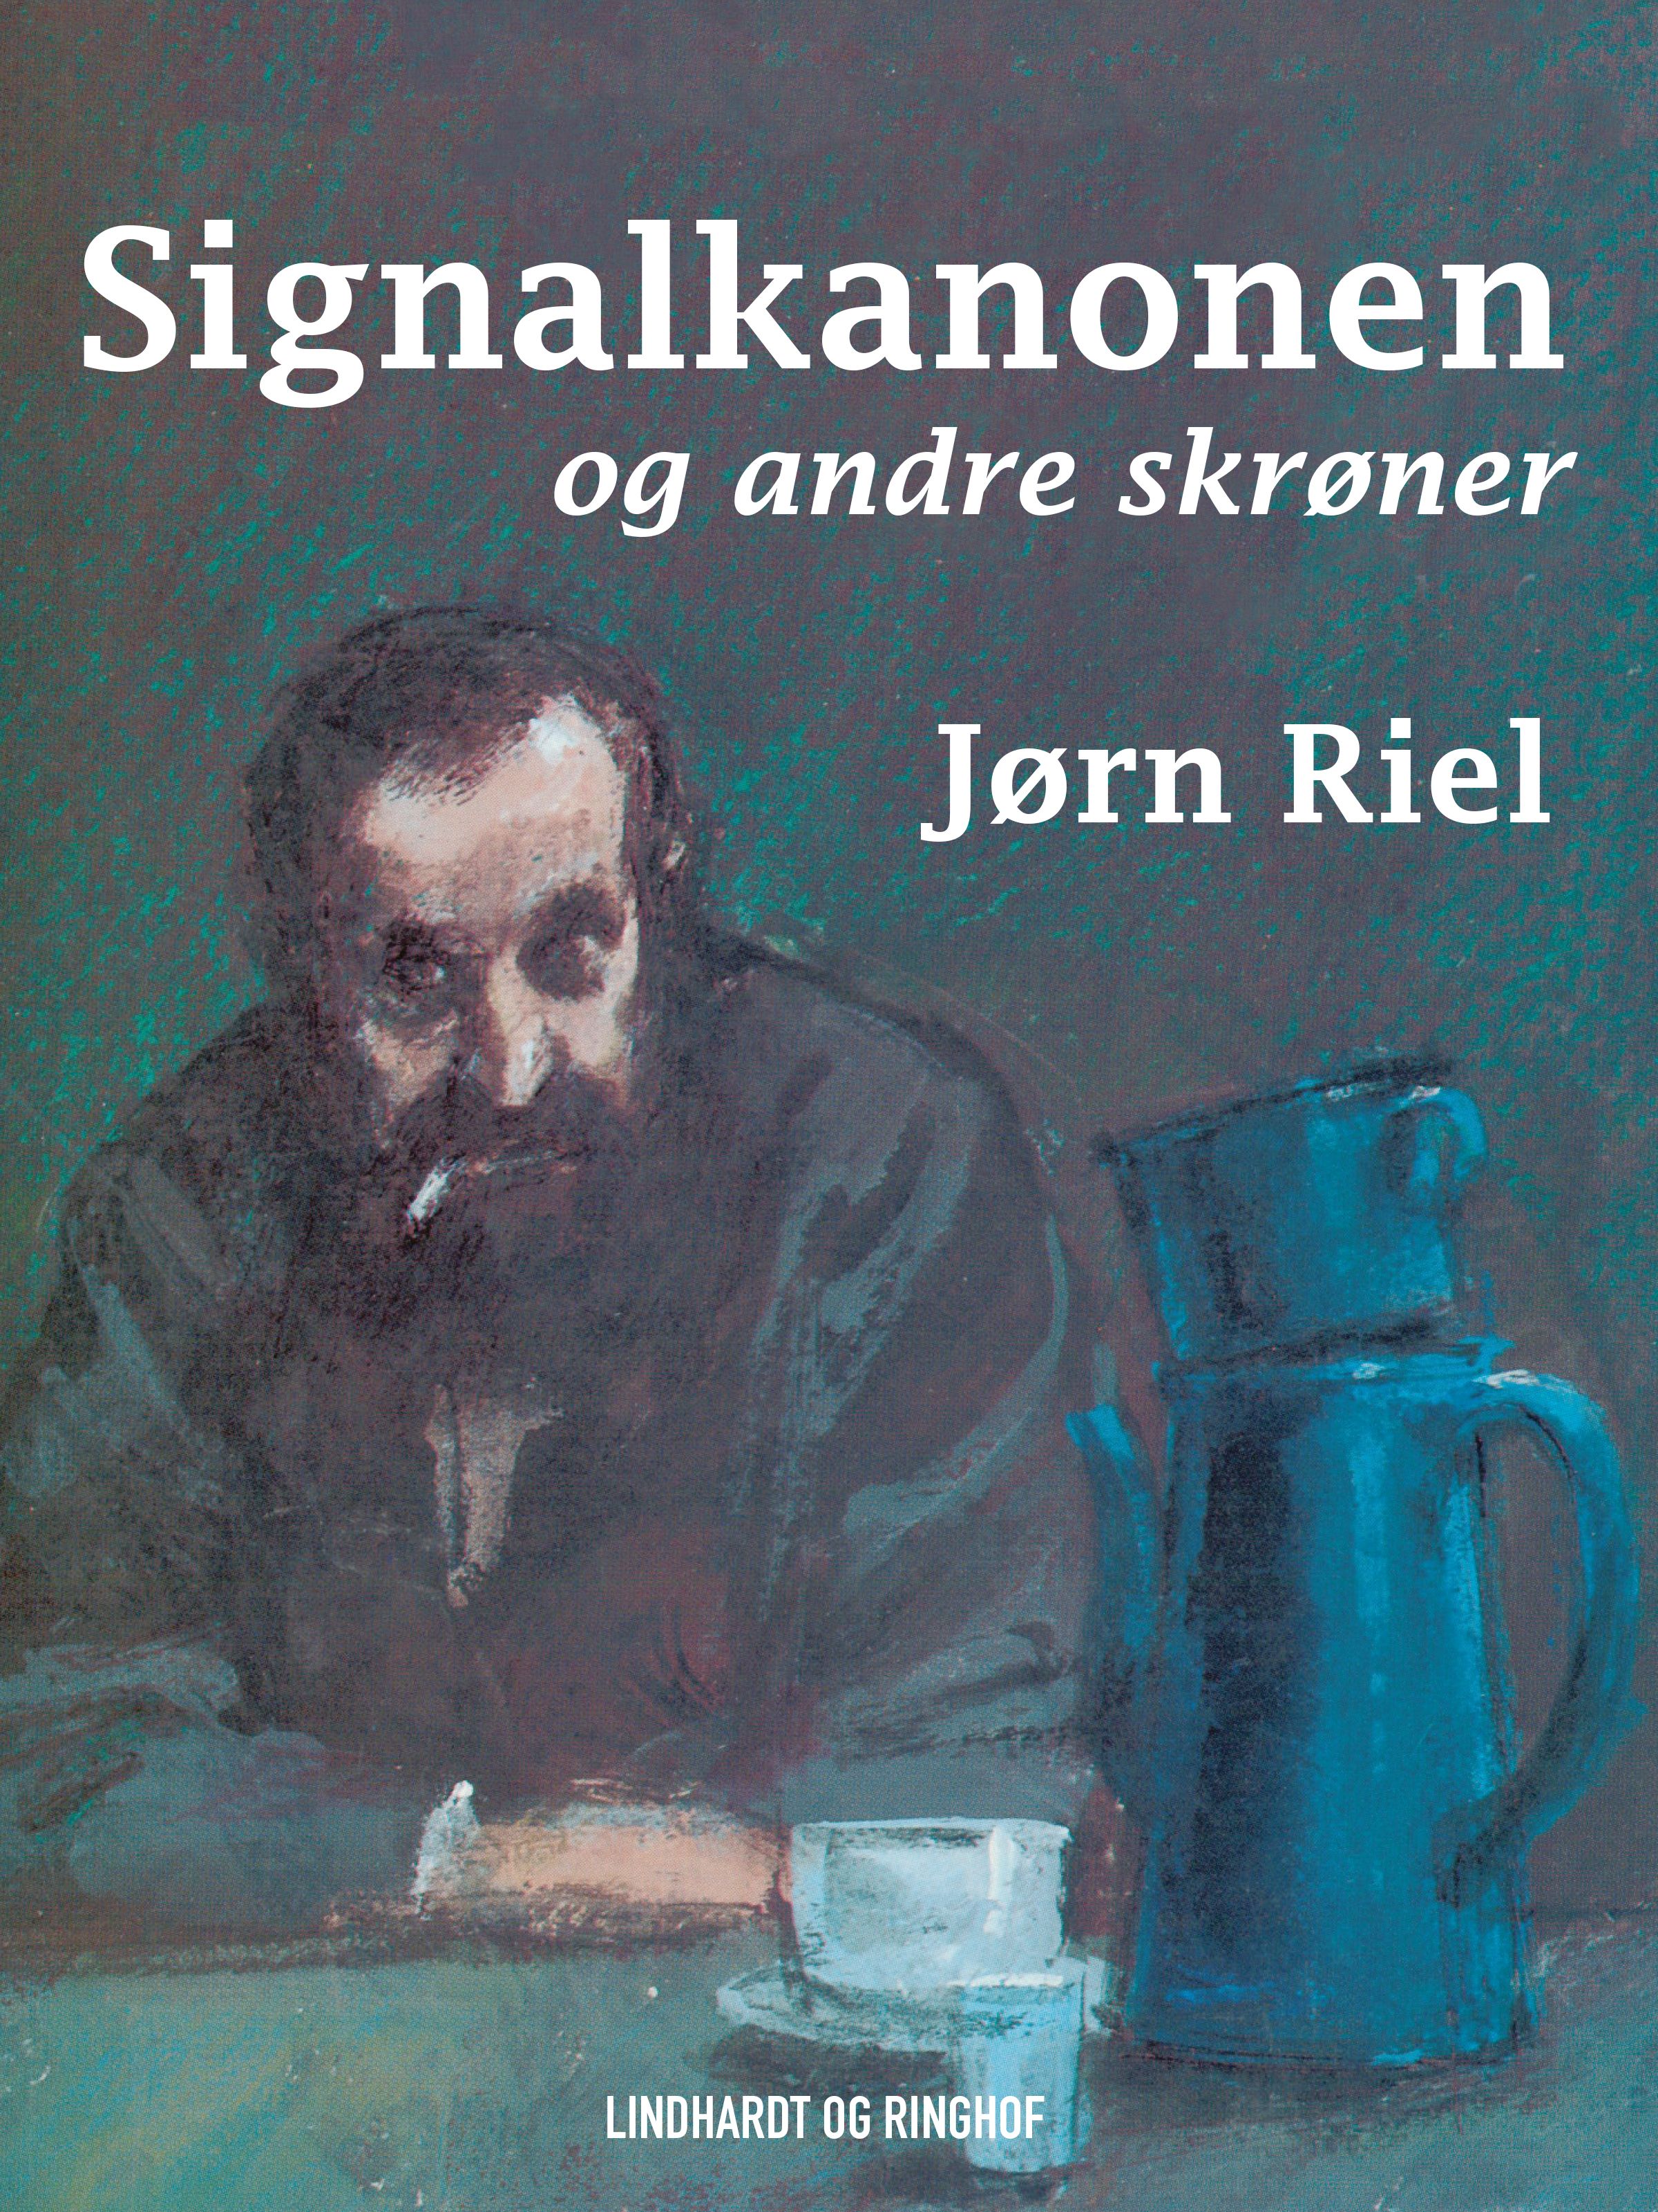 Signalkanonen og andre skrøner, e-bog af Jørn Riel